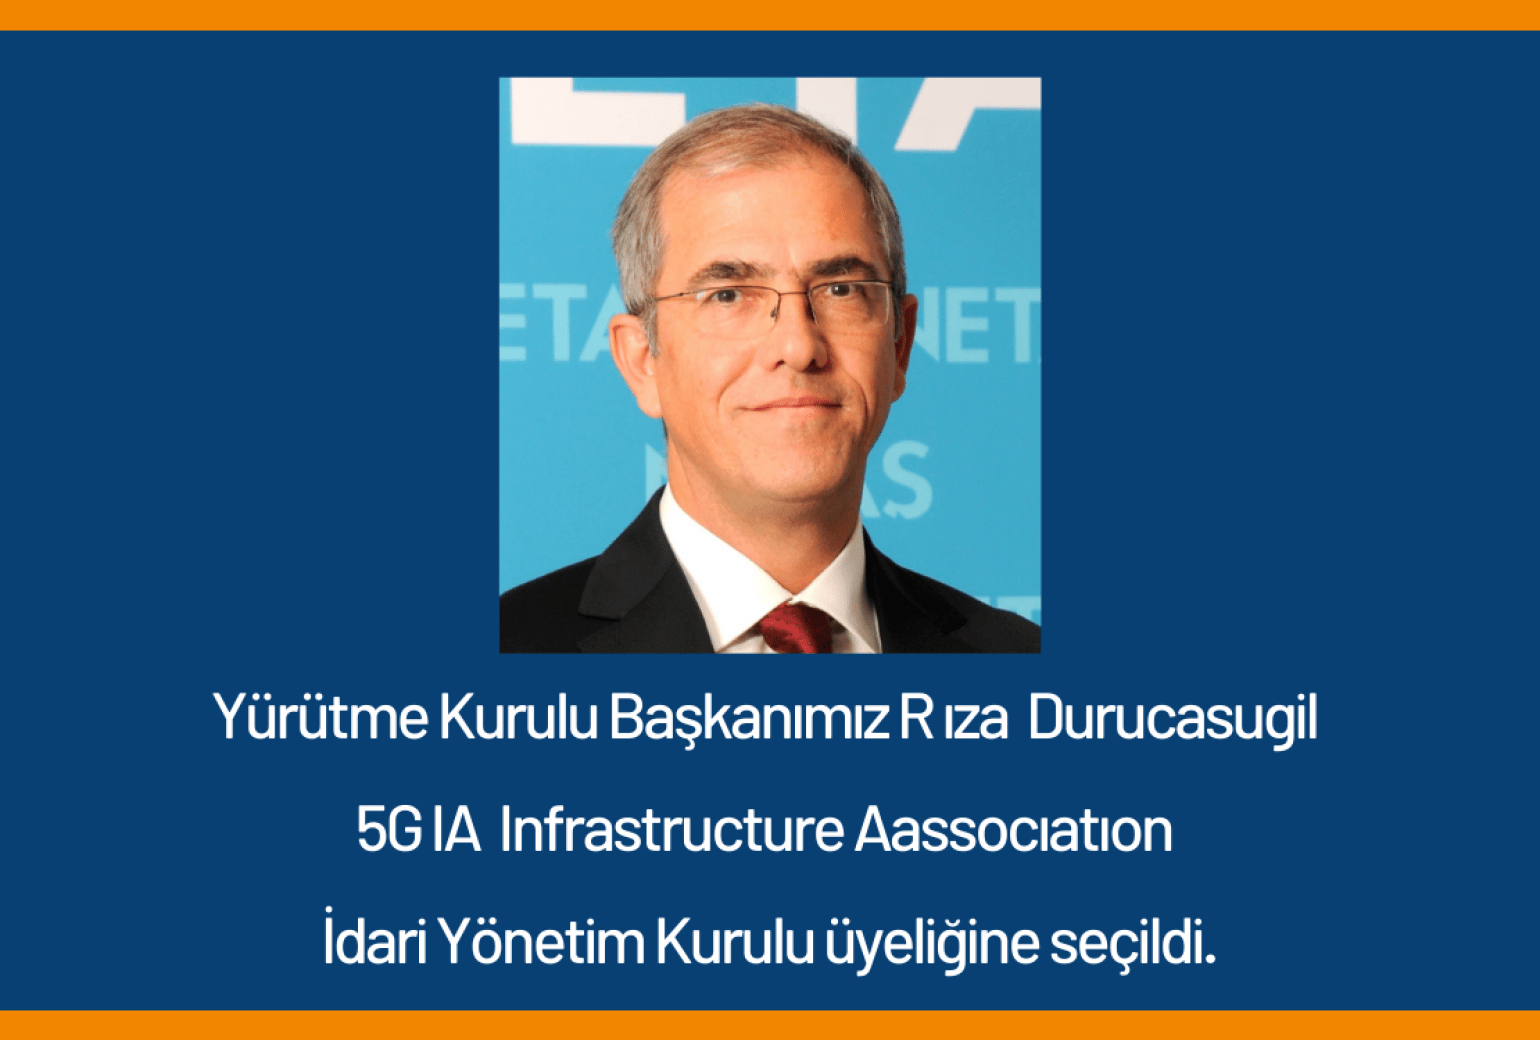 YK Başkanımız 5G IA Infrastructure Association Yürütme Kurulu'na Seçildi.